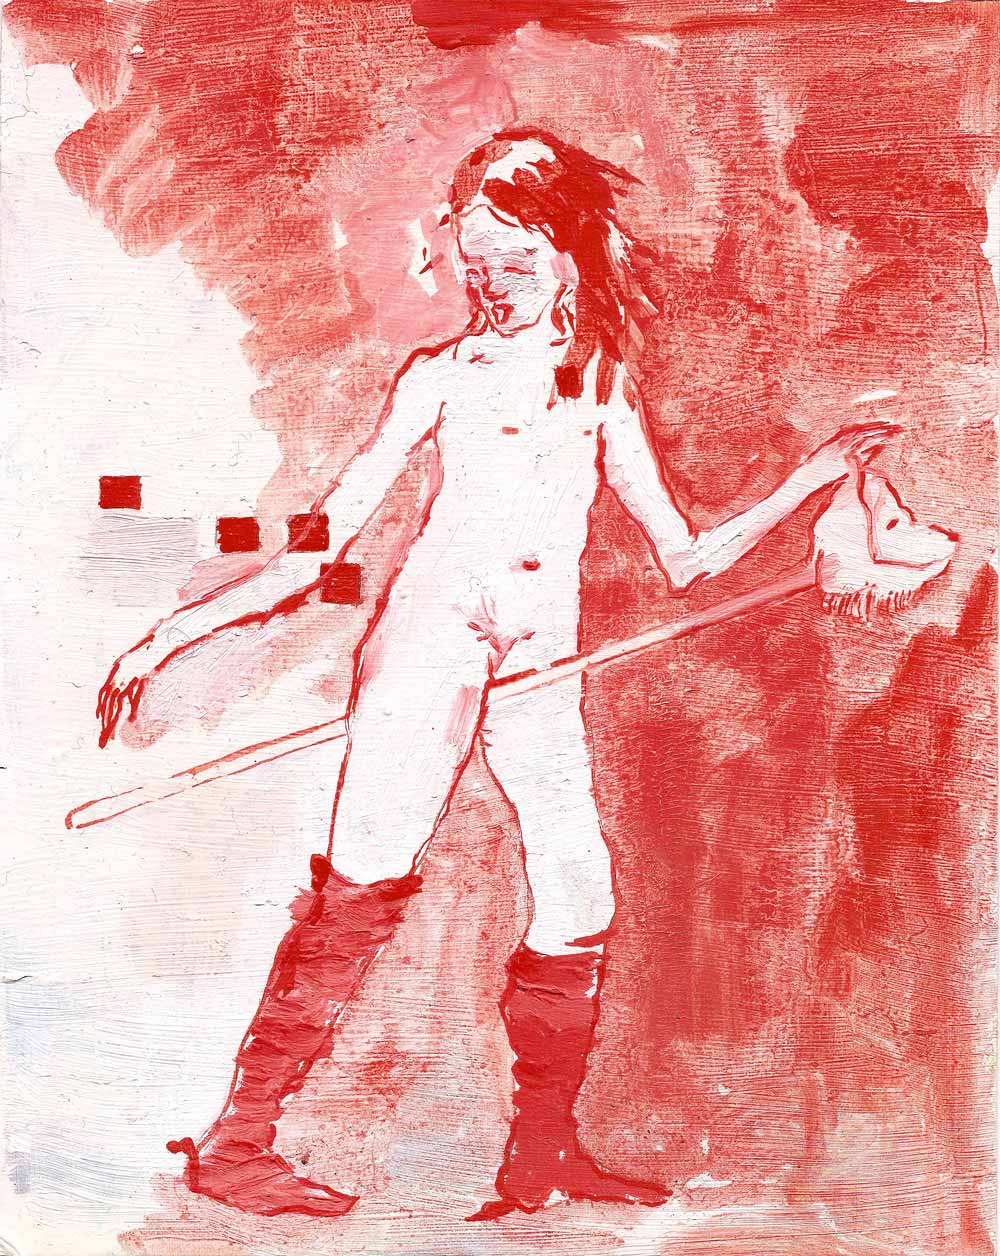 Stechende nackte weibliche Figur mit einem Steckenpferd. Rot weiss.